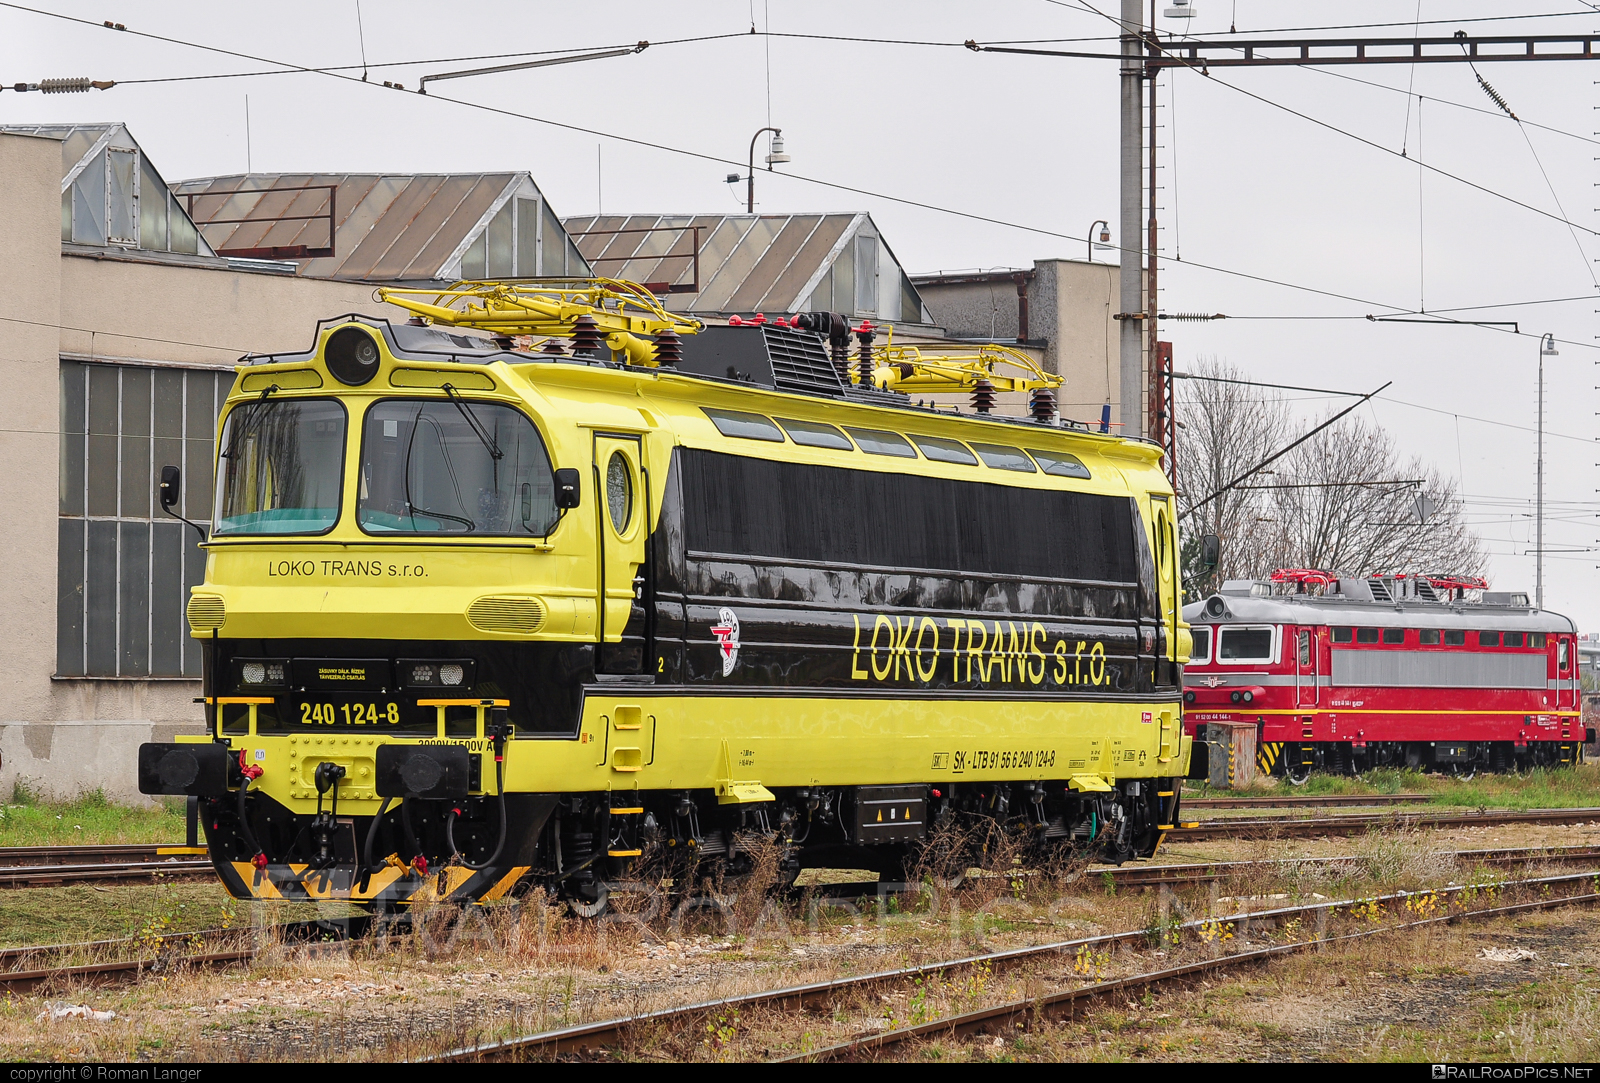 Škoda 47E - 240 124-8 operated by LOKO TRANS s.r.o. #laminatka #locomotive240 #lokotrans #skoda #skoda47e